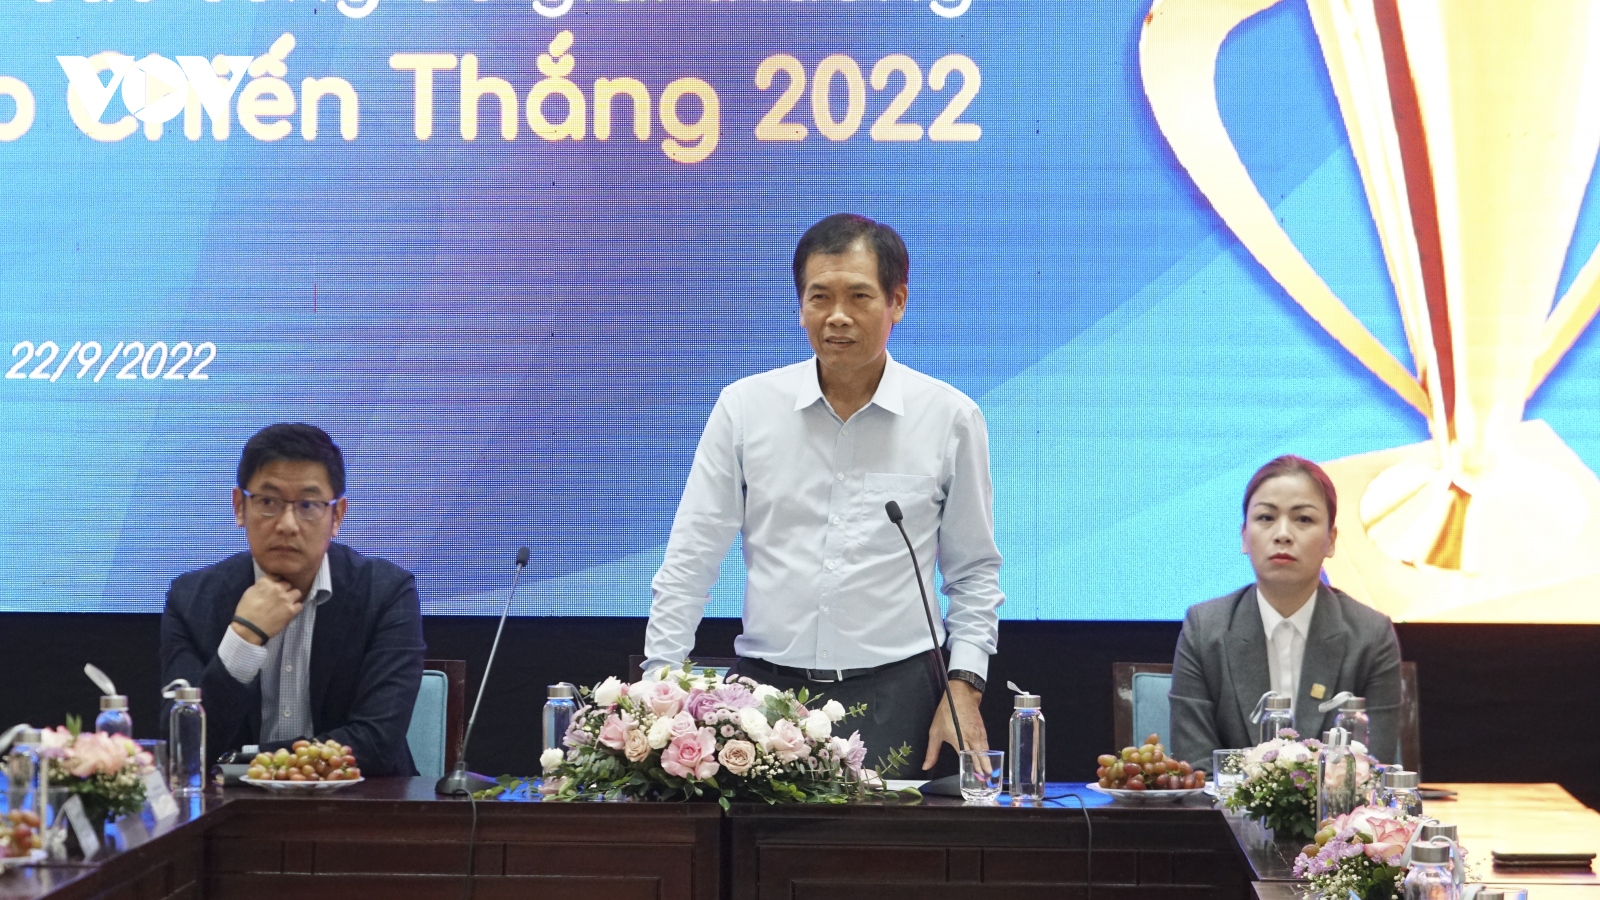 HLV Park Hang Seo được xướng tên trong danh sách đề cử tại Cúp Chiến thắng 2022